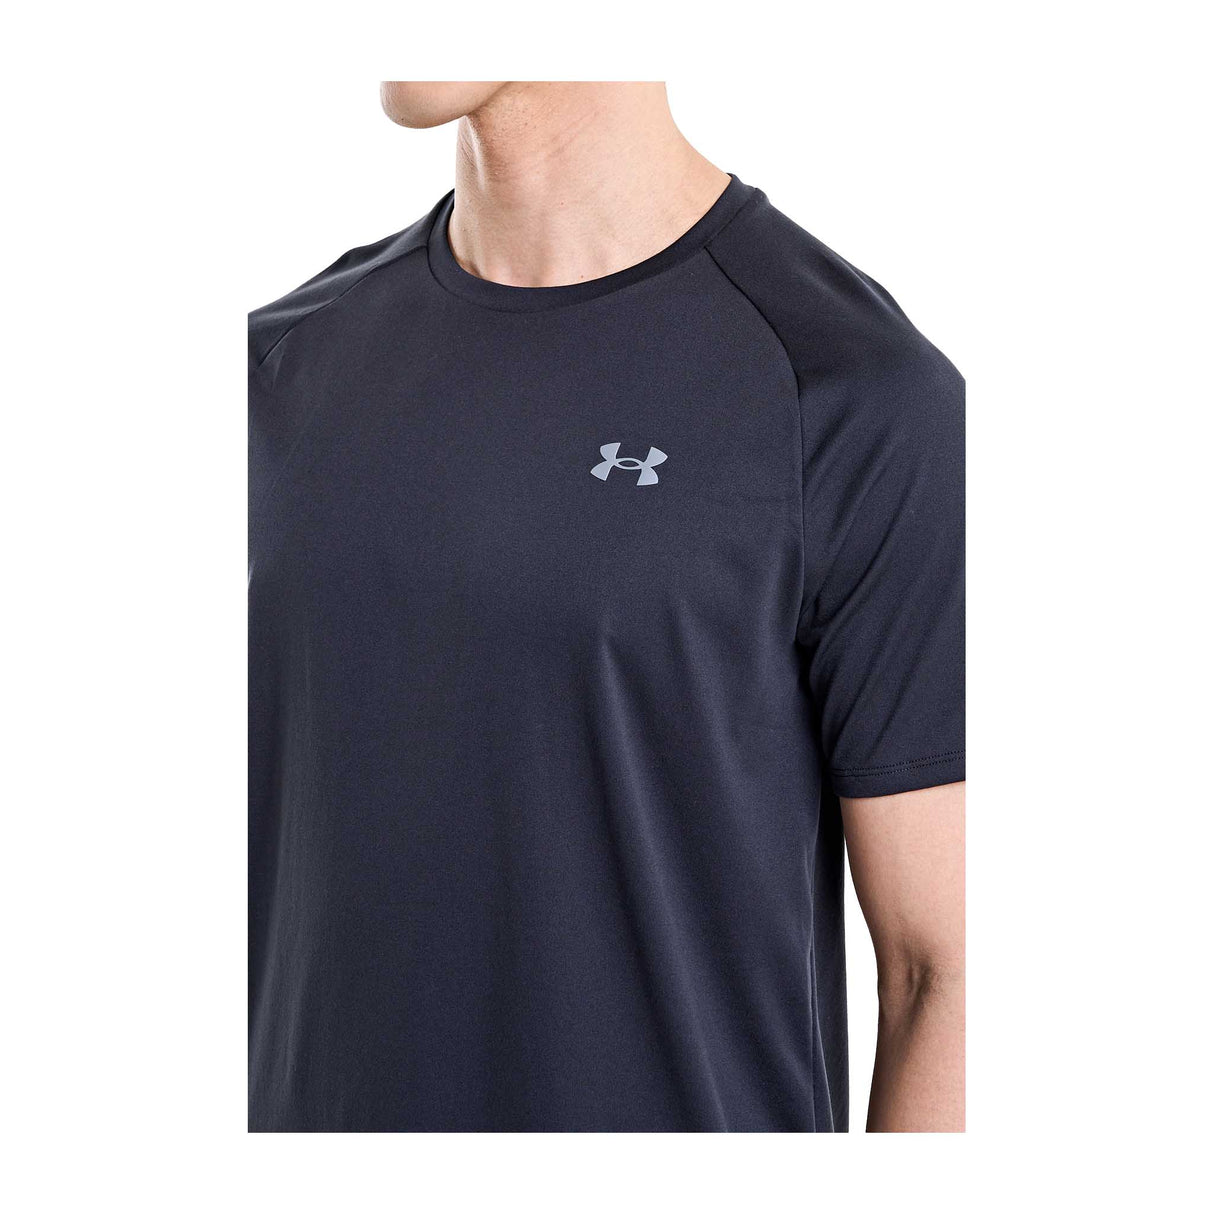 UA Tech 2.0 t-shirt à manches courtes hommes face- noir / graphite